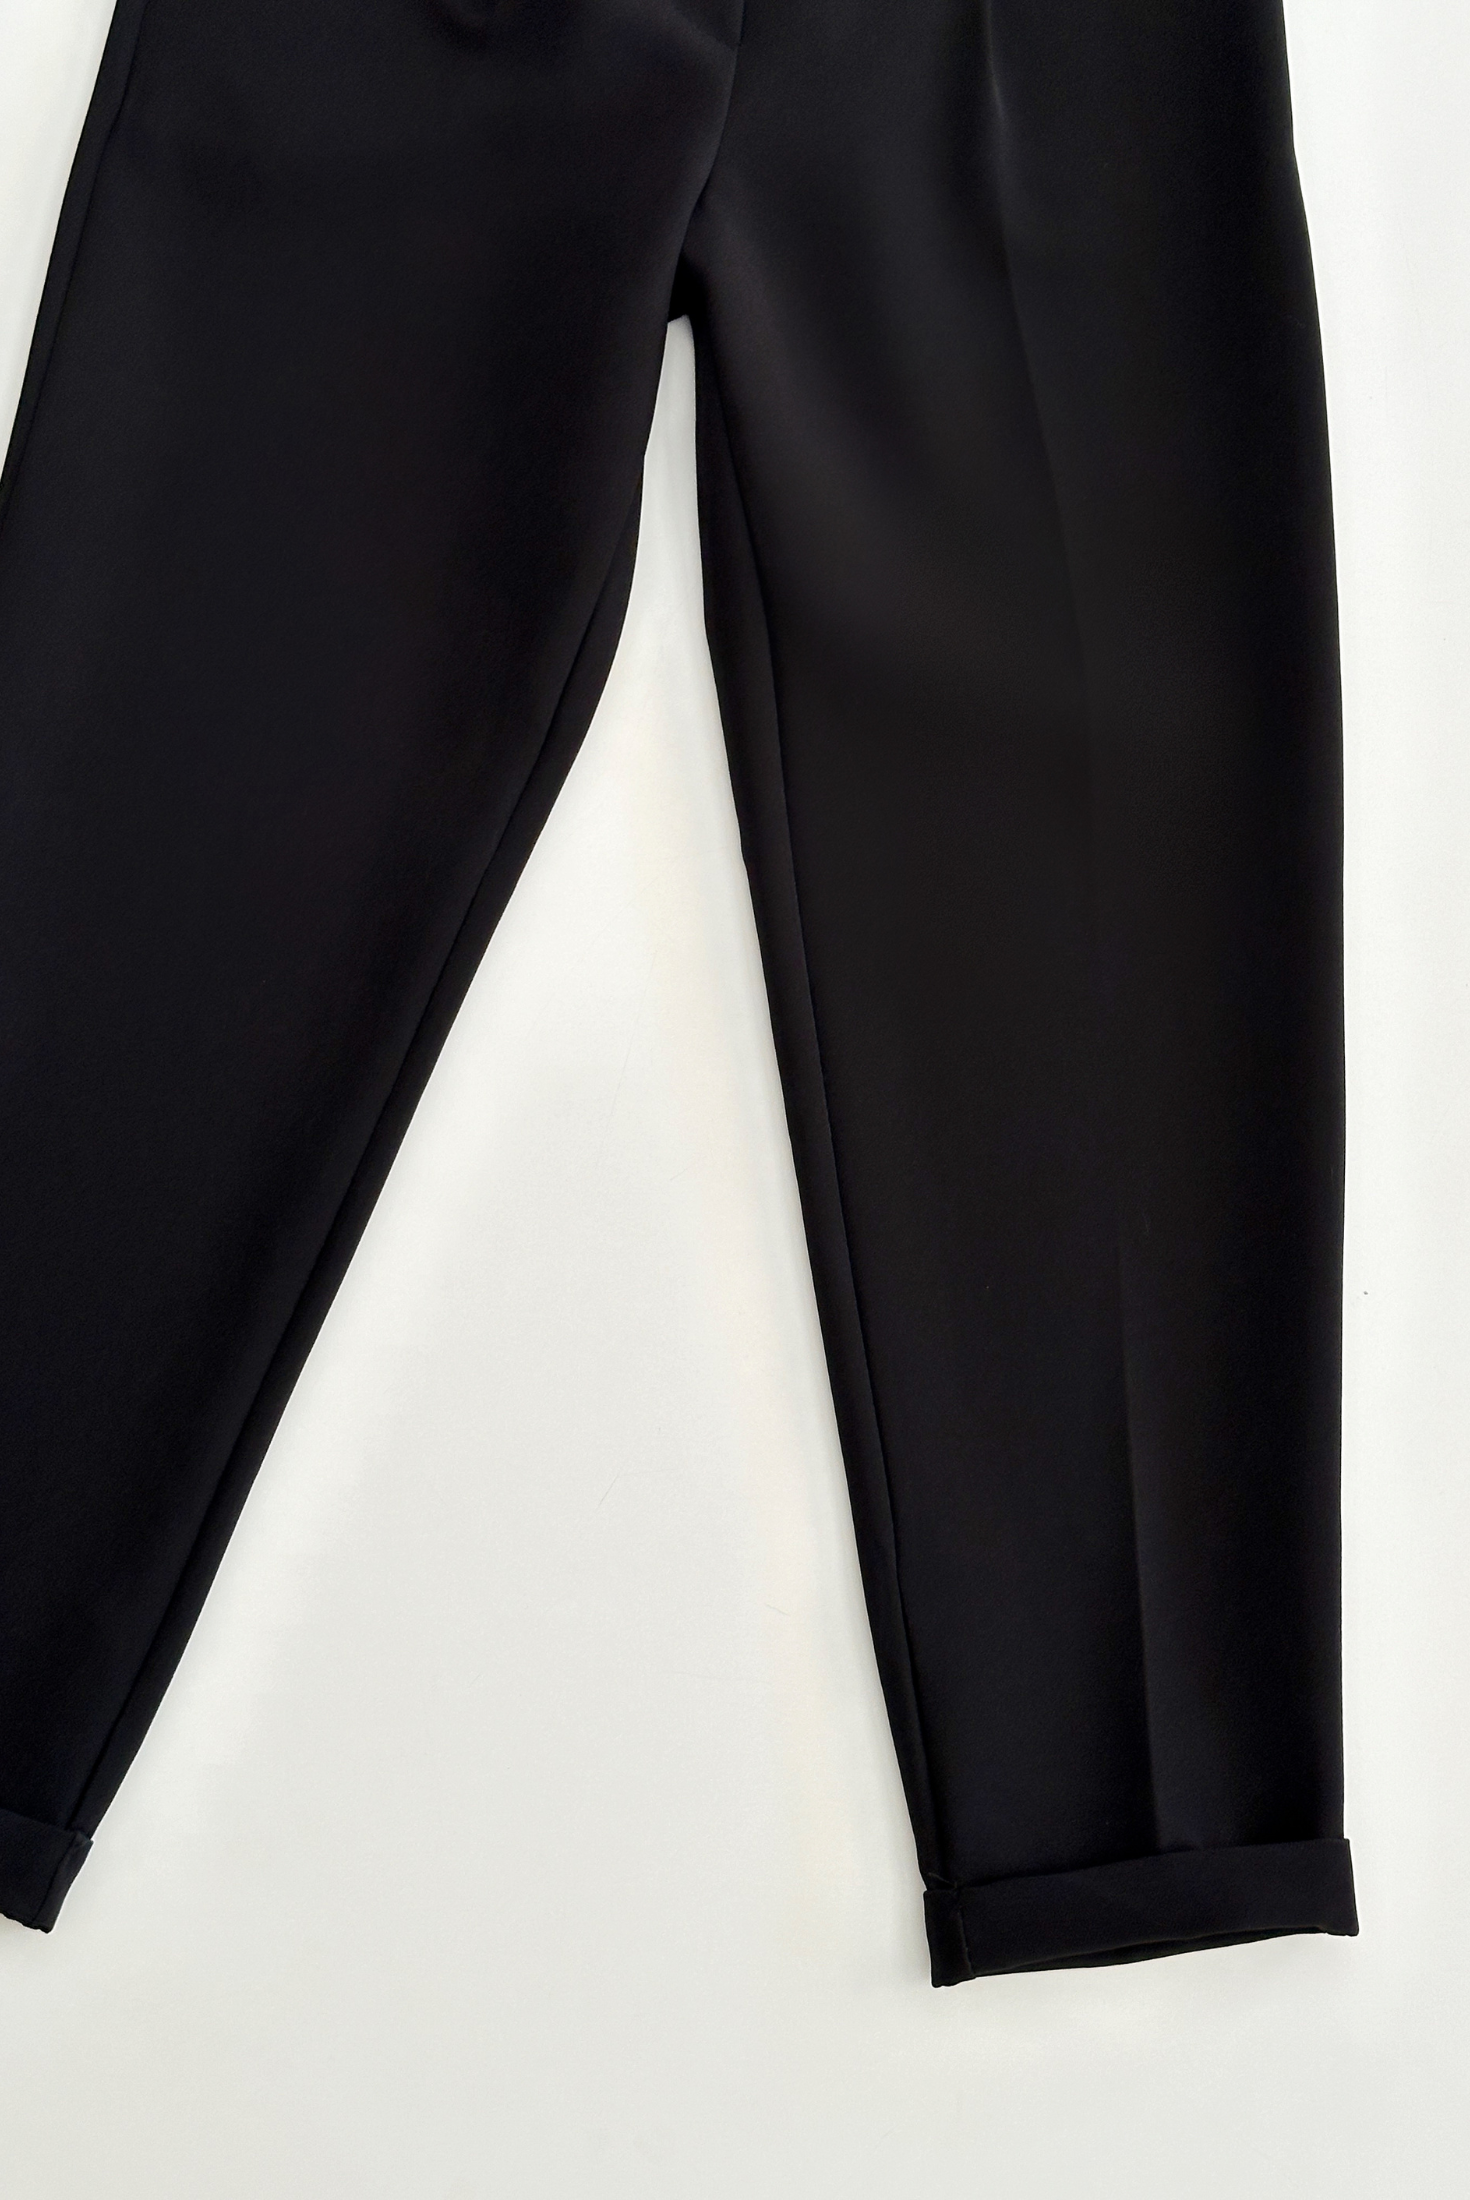 מכנס מחויט עם גומי במותן בצבע שחור